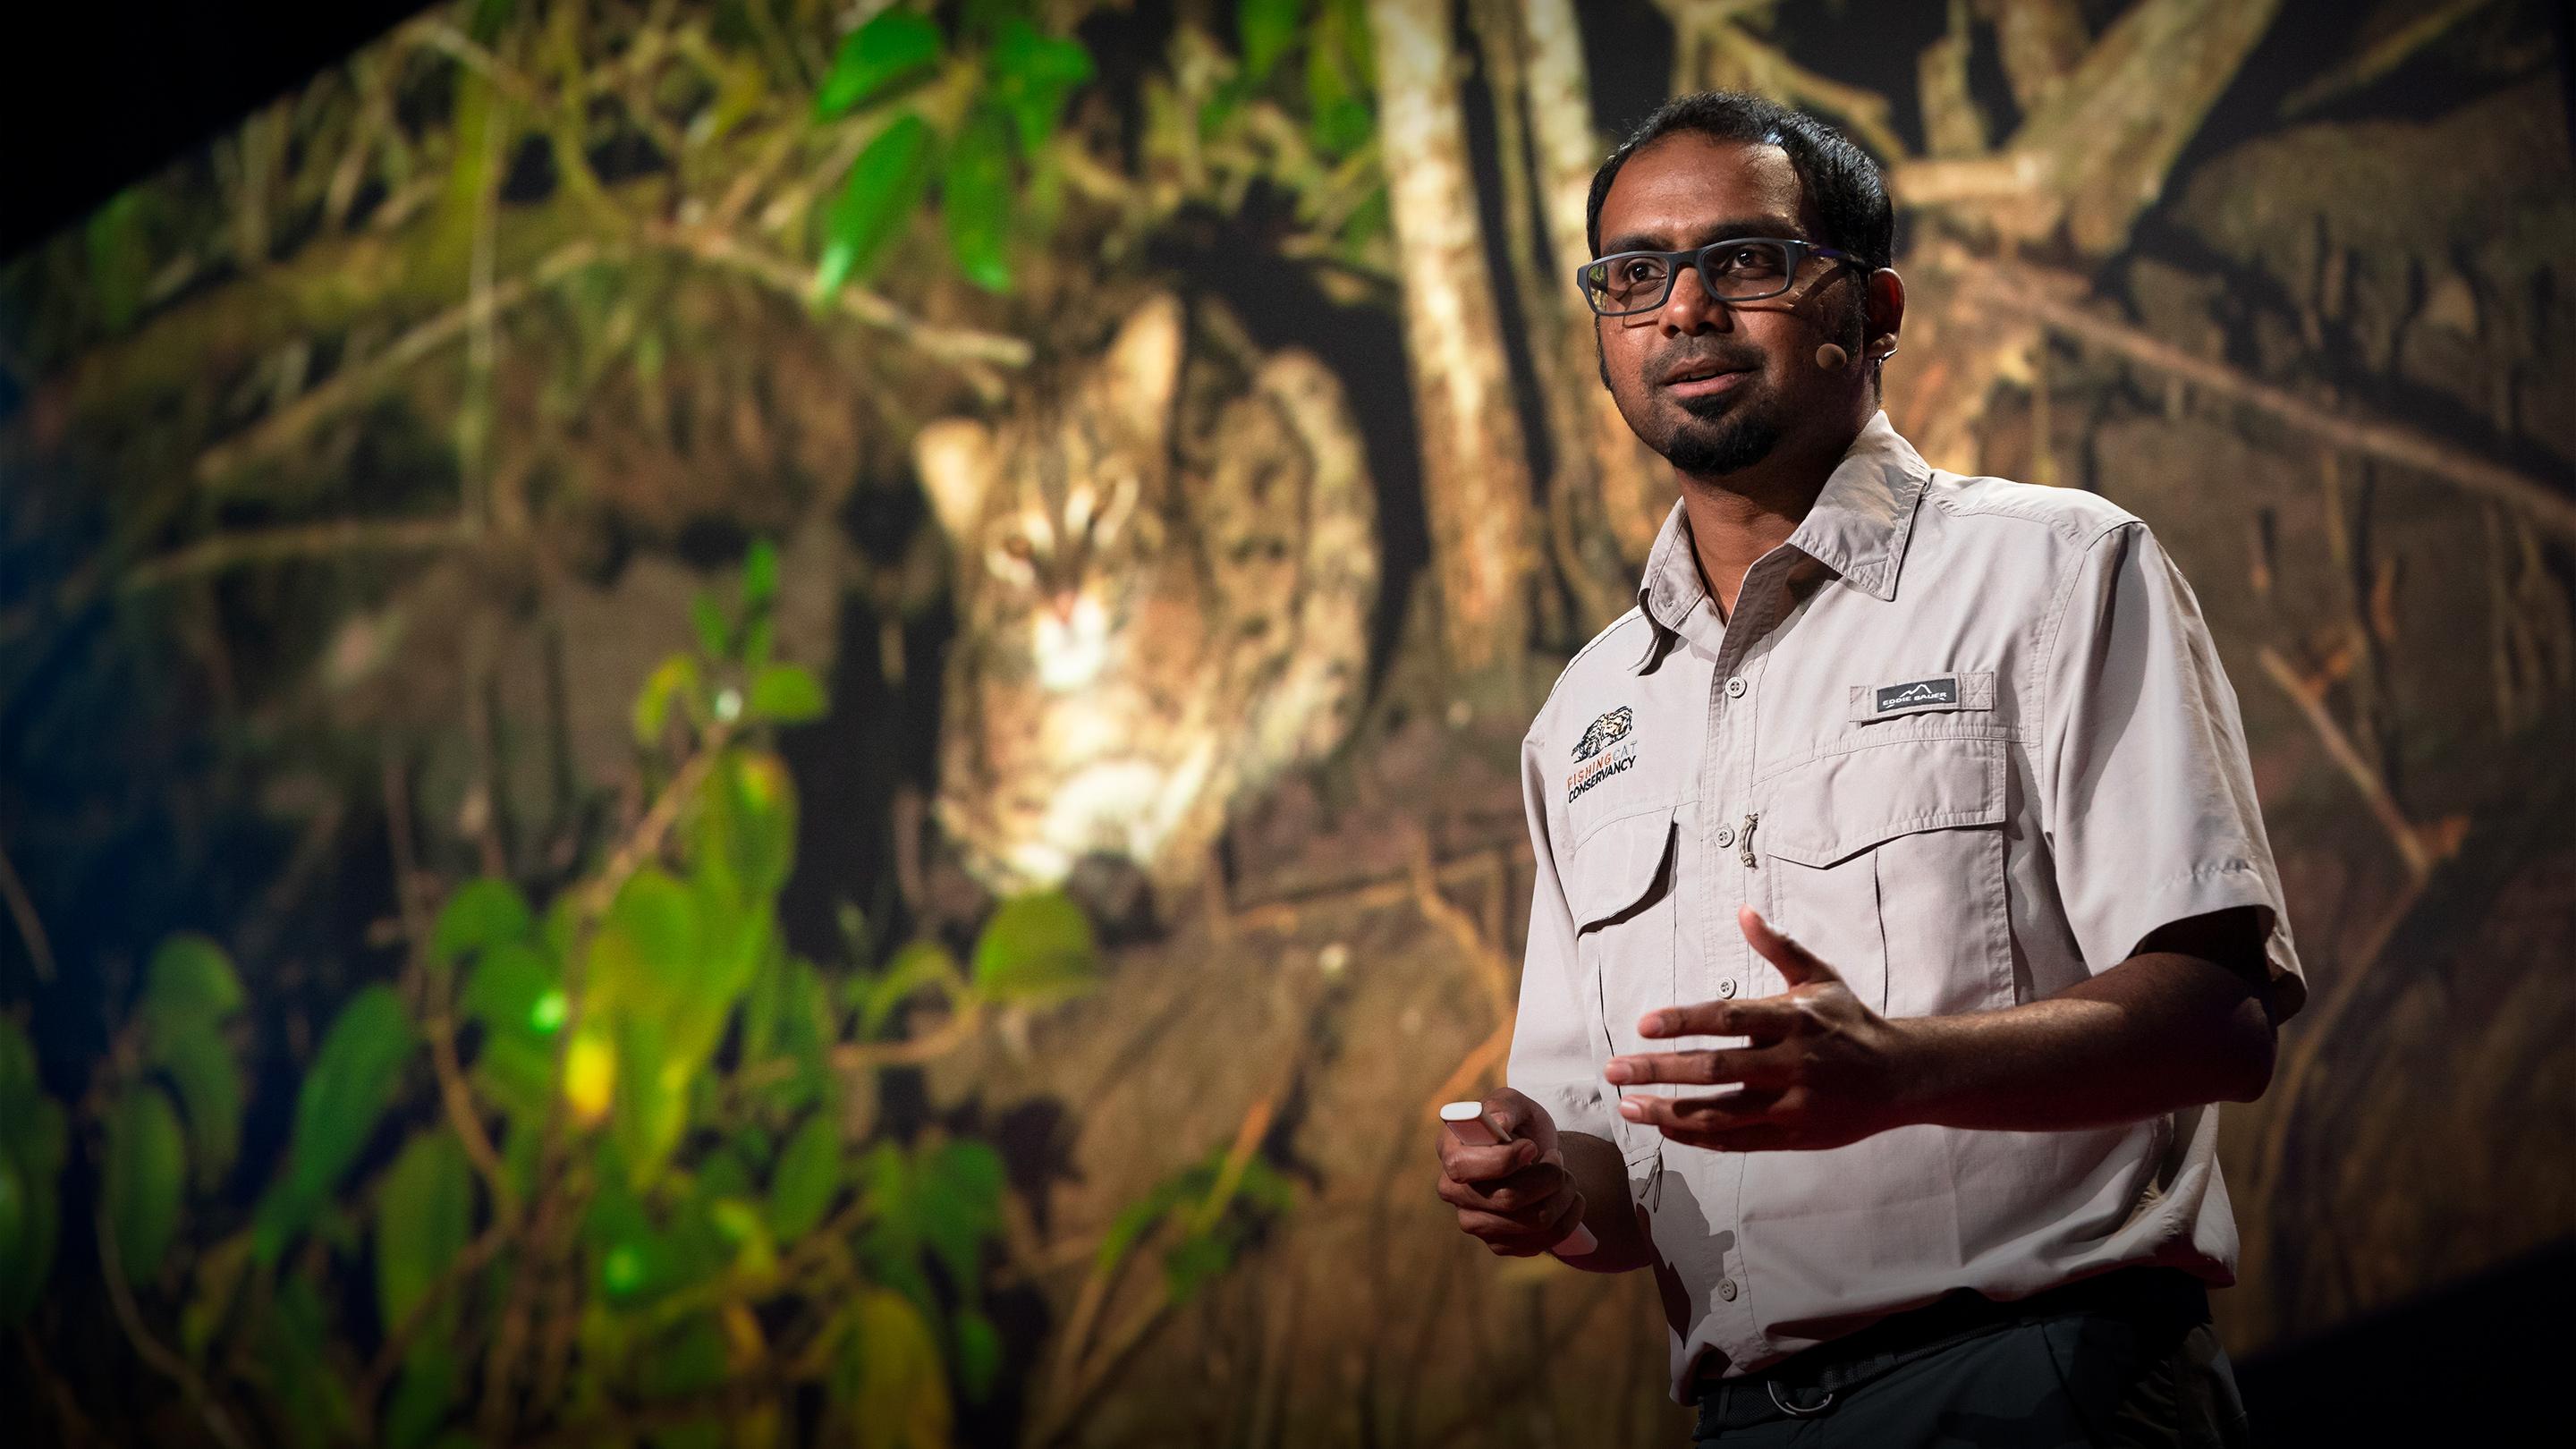 Связь между кошками-рыболовами и сохранением мангровых лесов | Ашвин Найду